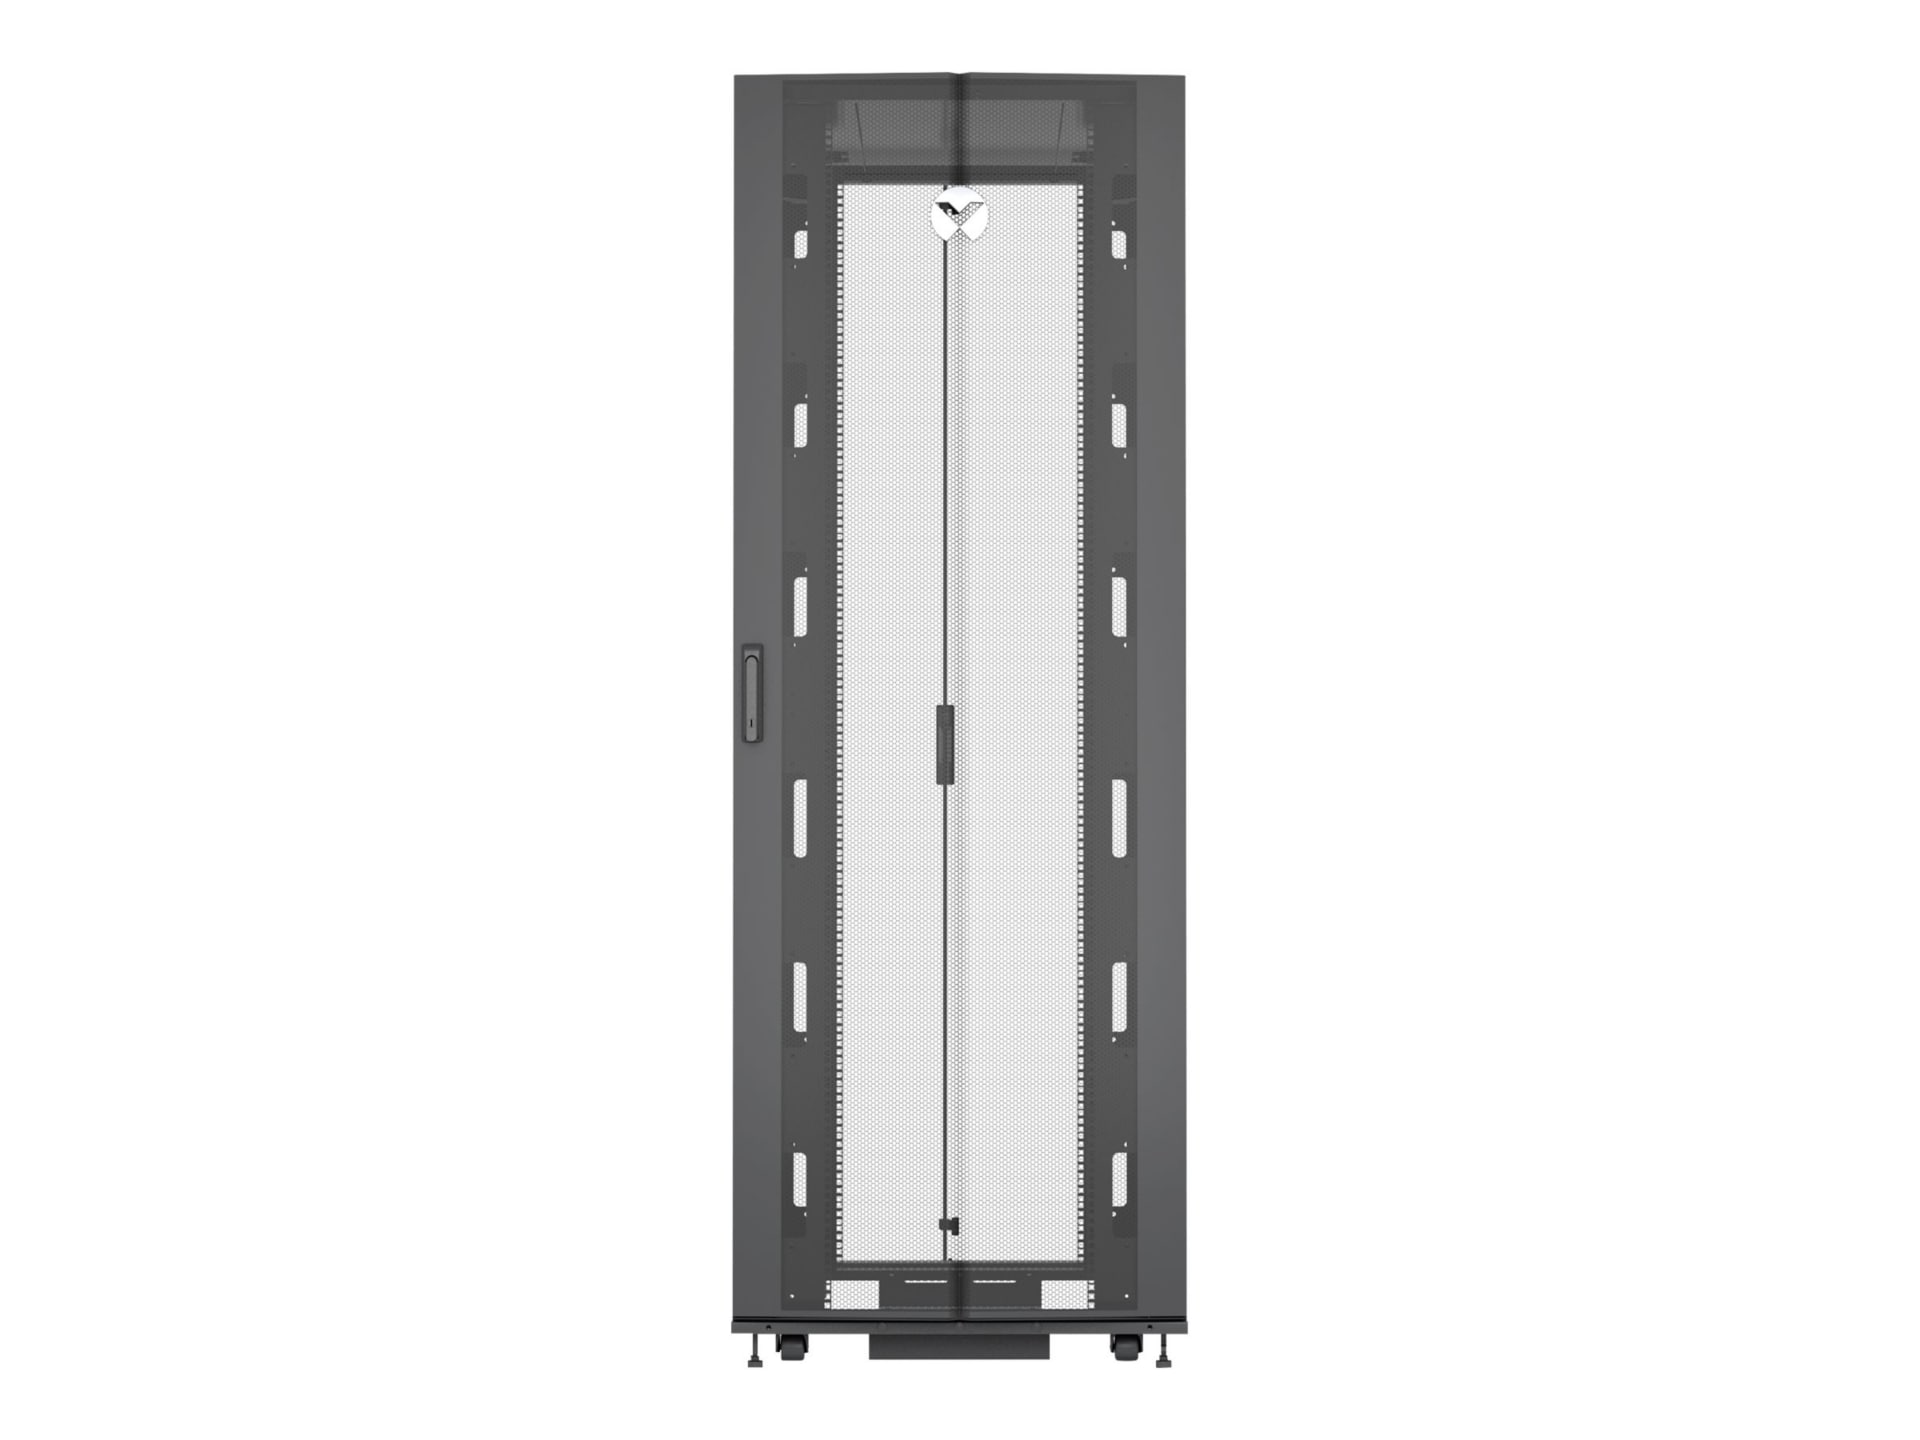 Vertiv VR Rack - 42U Server Rack Enclosure| 800x1200mm| 19-inch Cabinet (VR